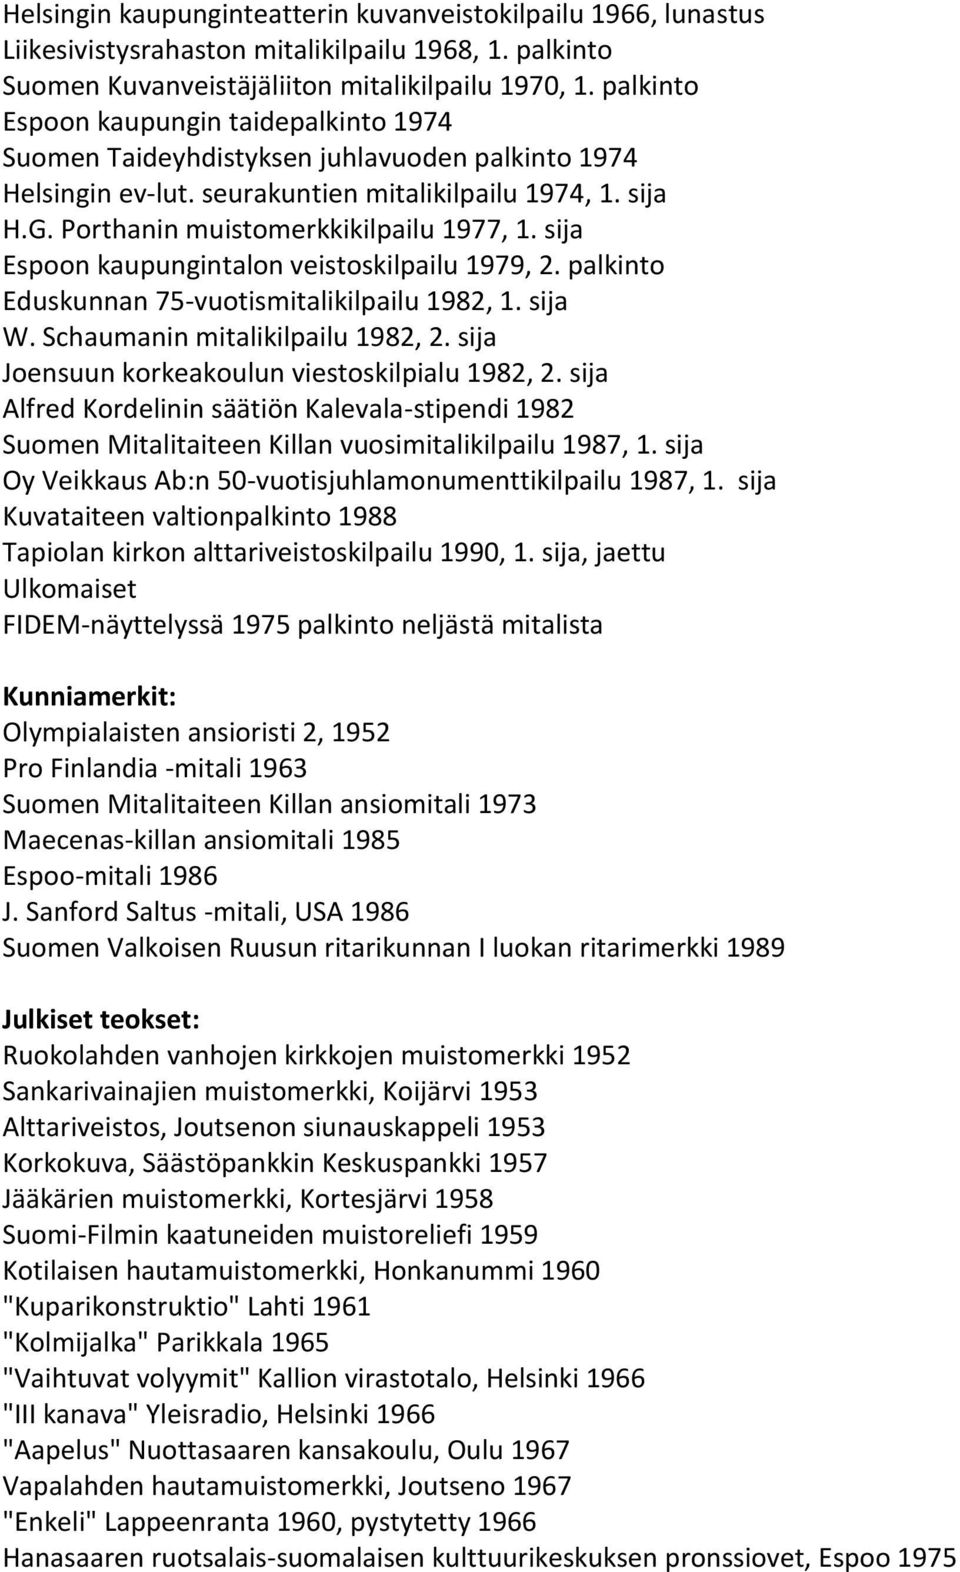 sija Espoon kaupungintalon veistoskilpailu 1979, 2. palkinto Eduskunnan 75-vuotismitalikilpailu 1982, 1. sija W. Schaumanin mitalikilpailu 1982, 2. sija Joensuun korkeakoulun viestoskilpialu 1982, 2.